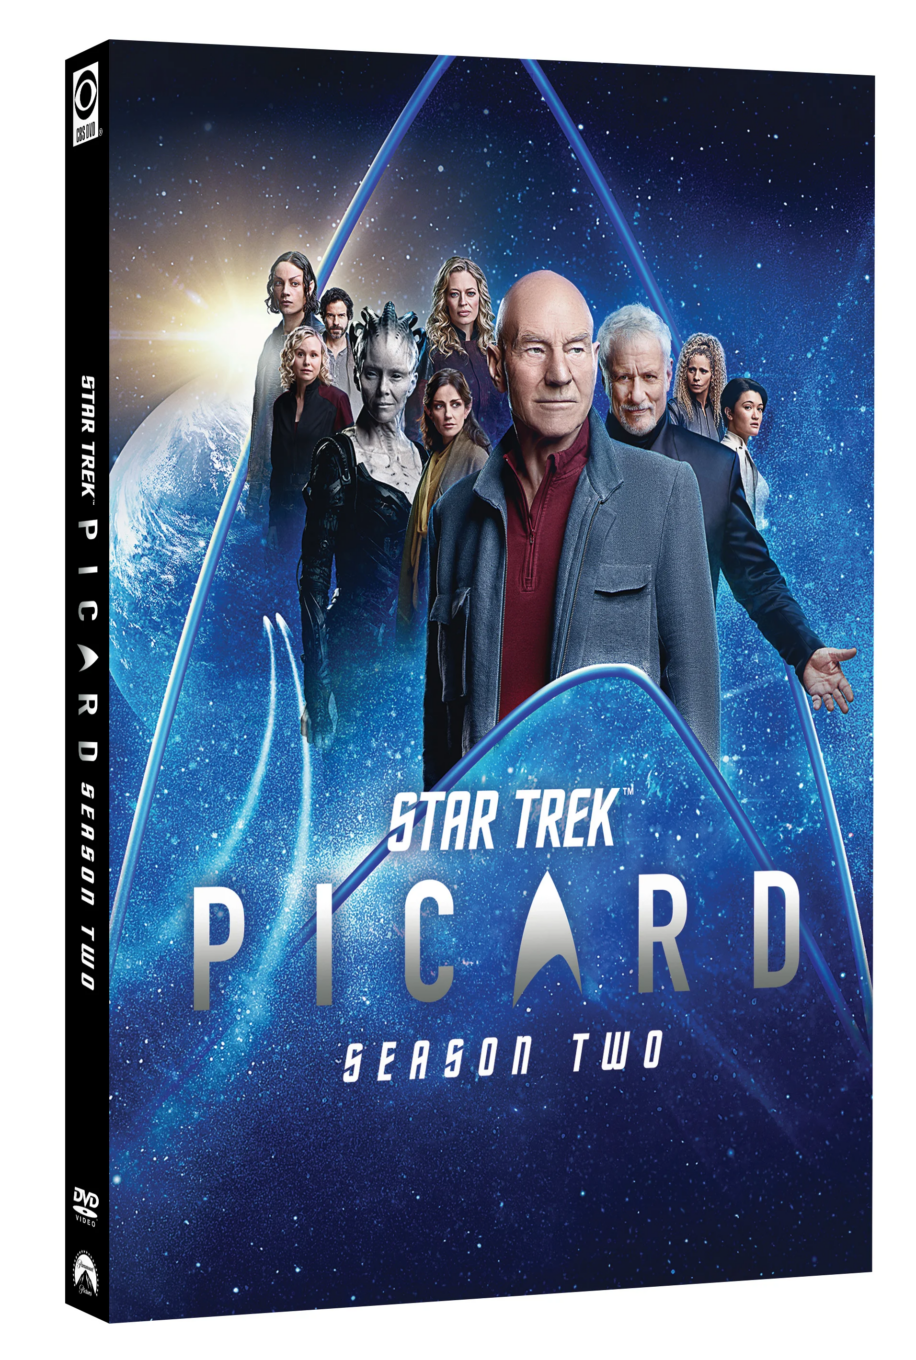 Blu-ray Review: Star Trek: Picard (Season Two)